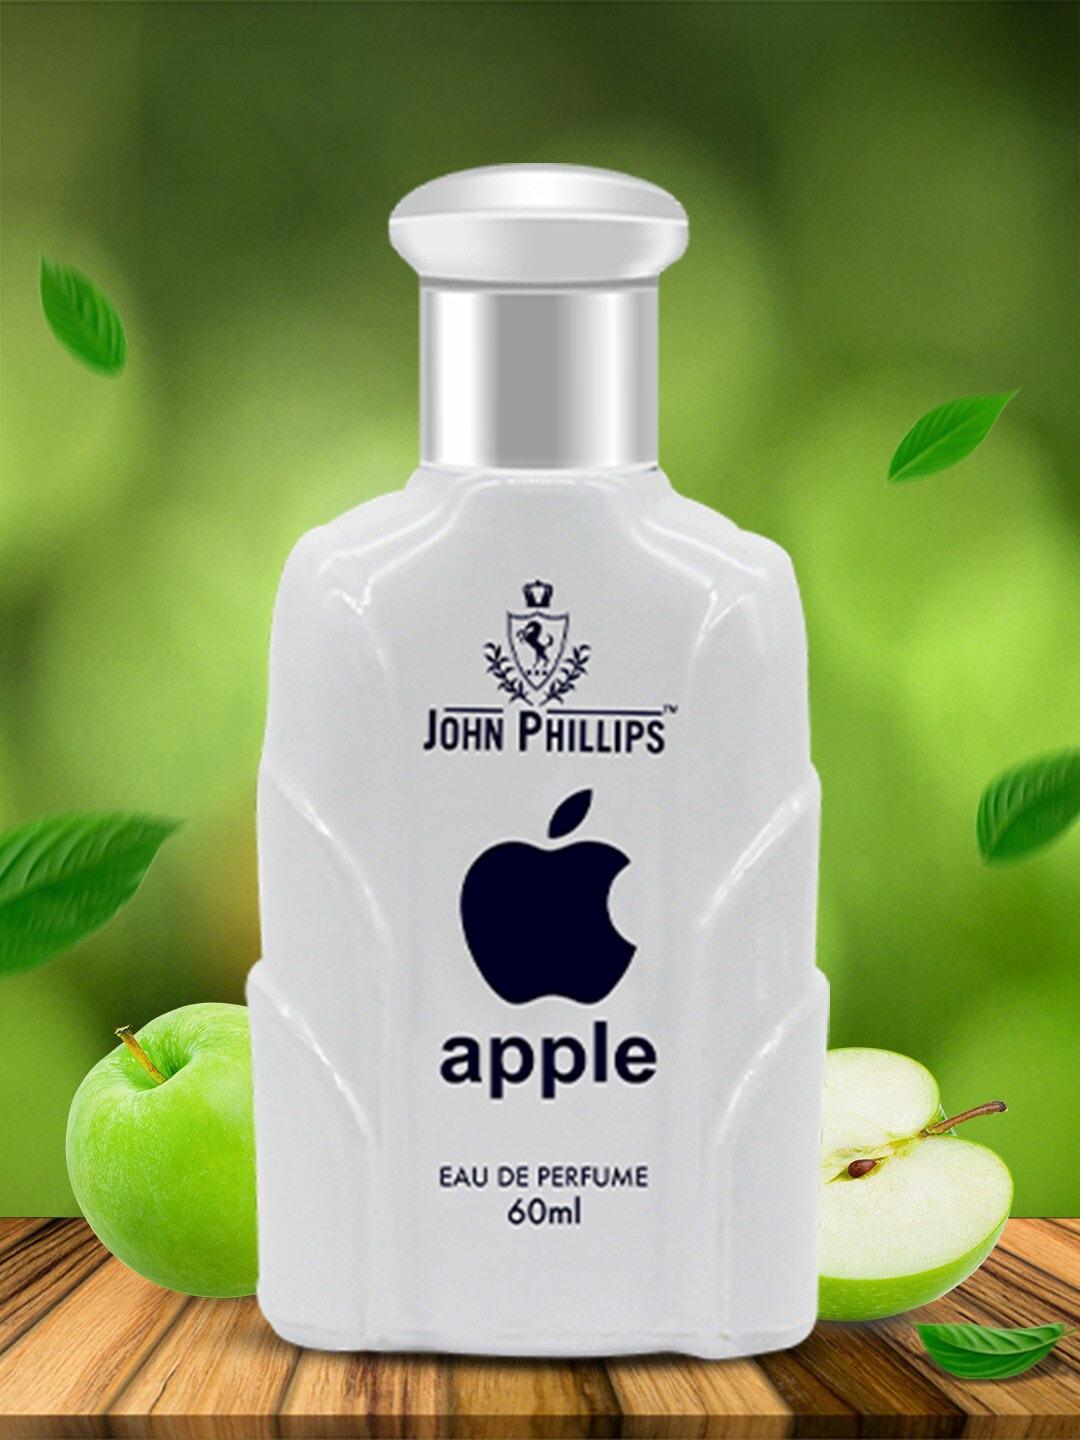 john phillips apple long-lasting eau de parfum - 60ml